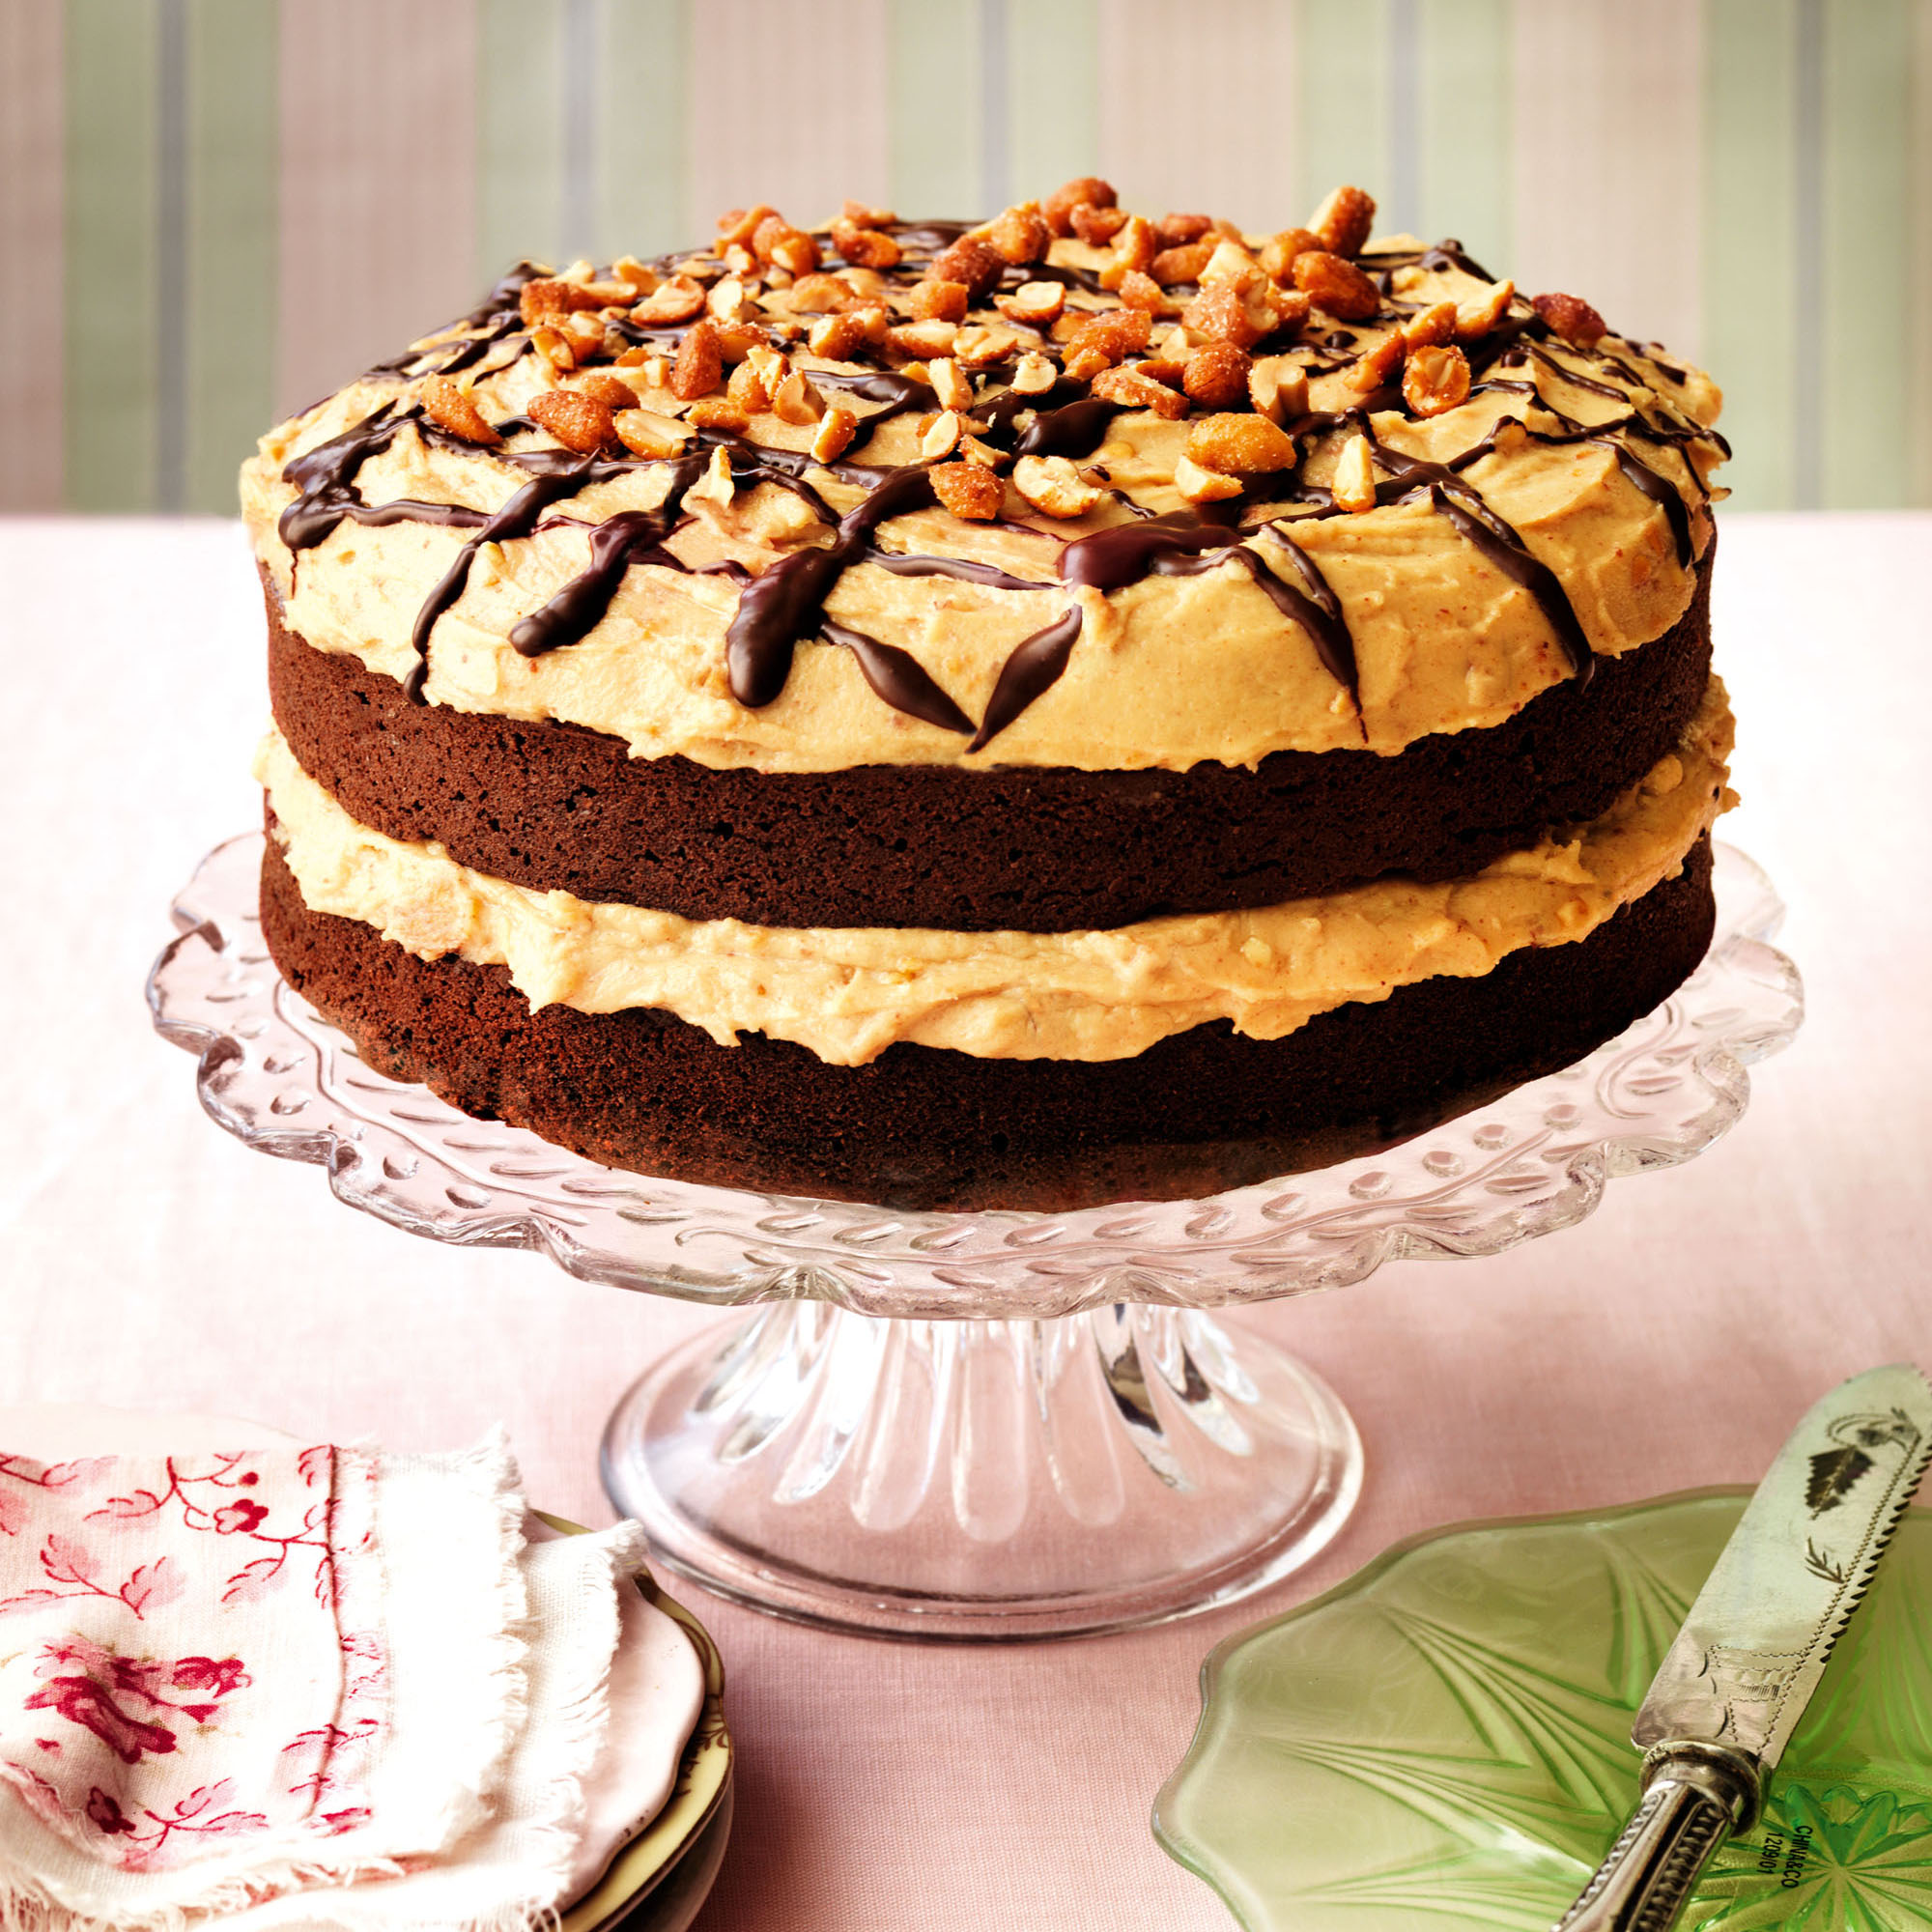 Chocolate brownie cake recipe